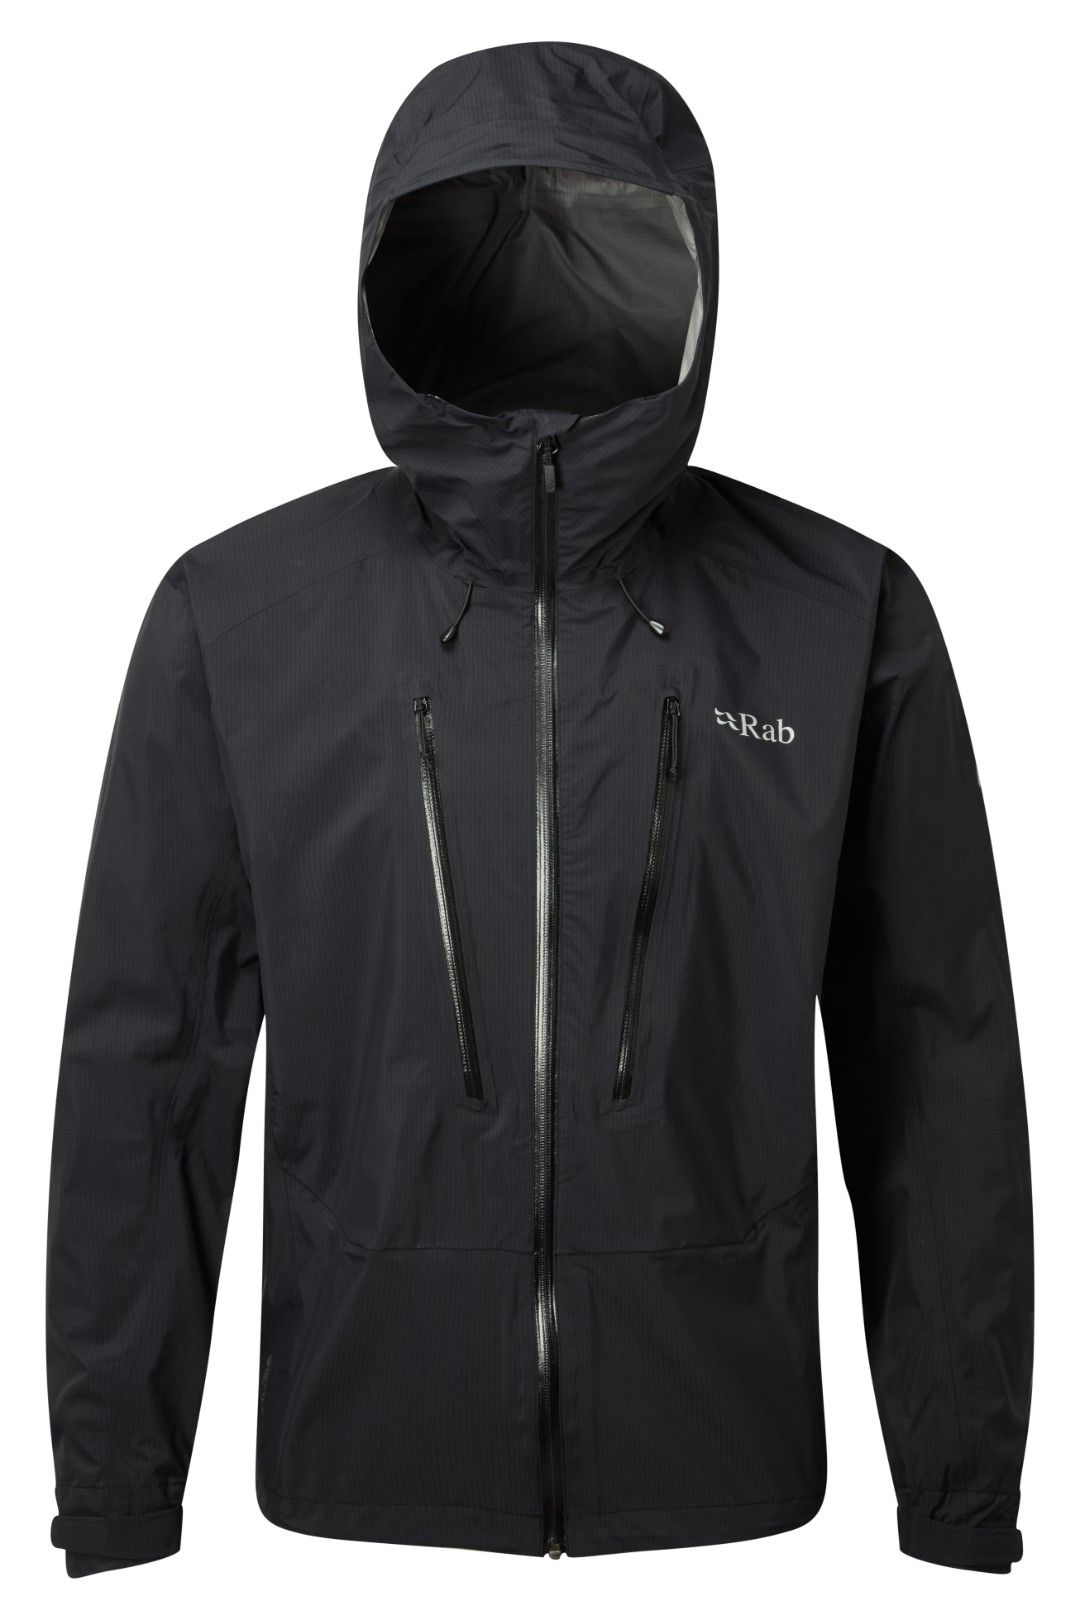 Rab - Downpour Alpine Jacket - Chaqueta impermeable - Hombre